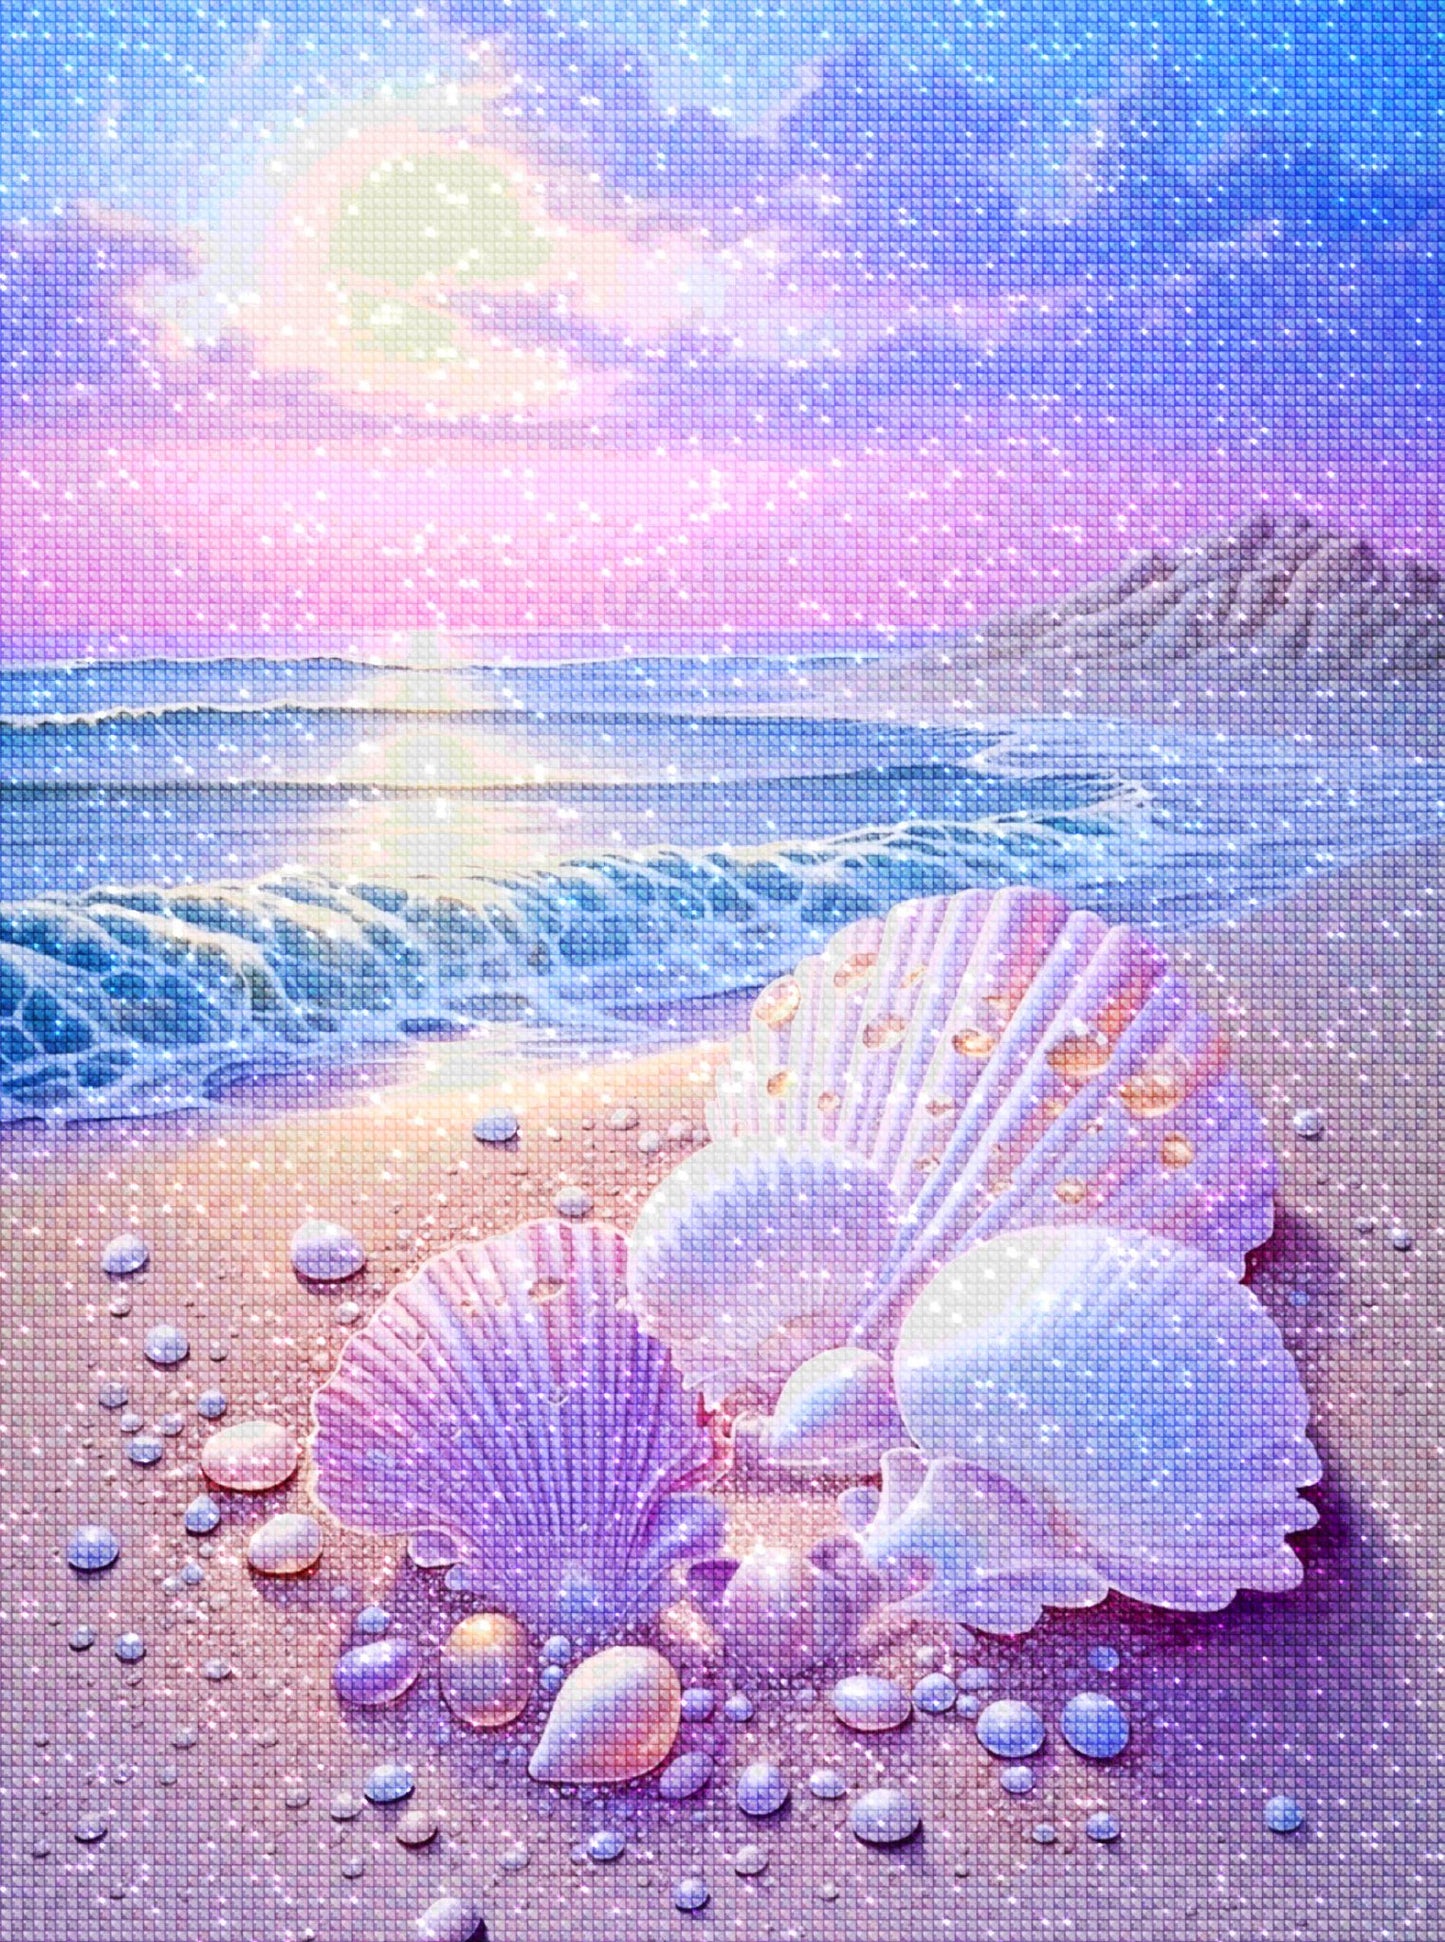 Seashells Serenity- Diamond Painting Kit - Artslo.com